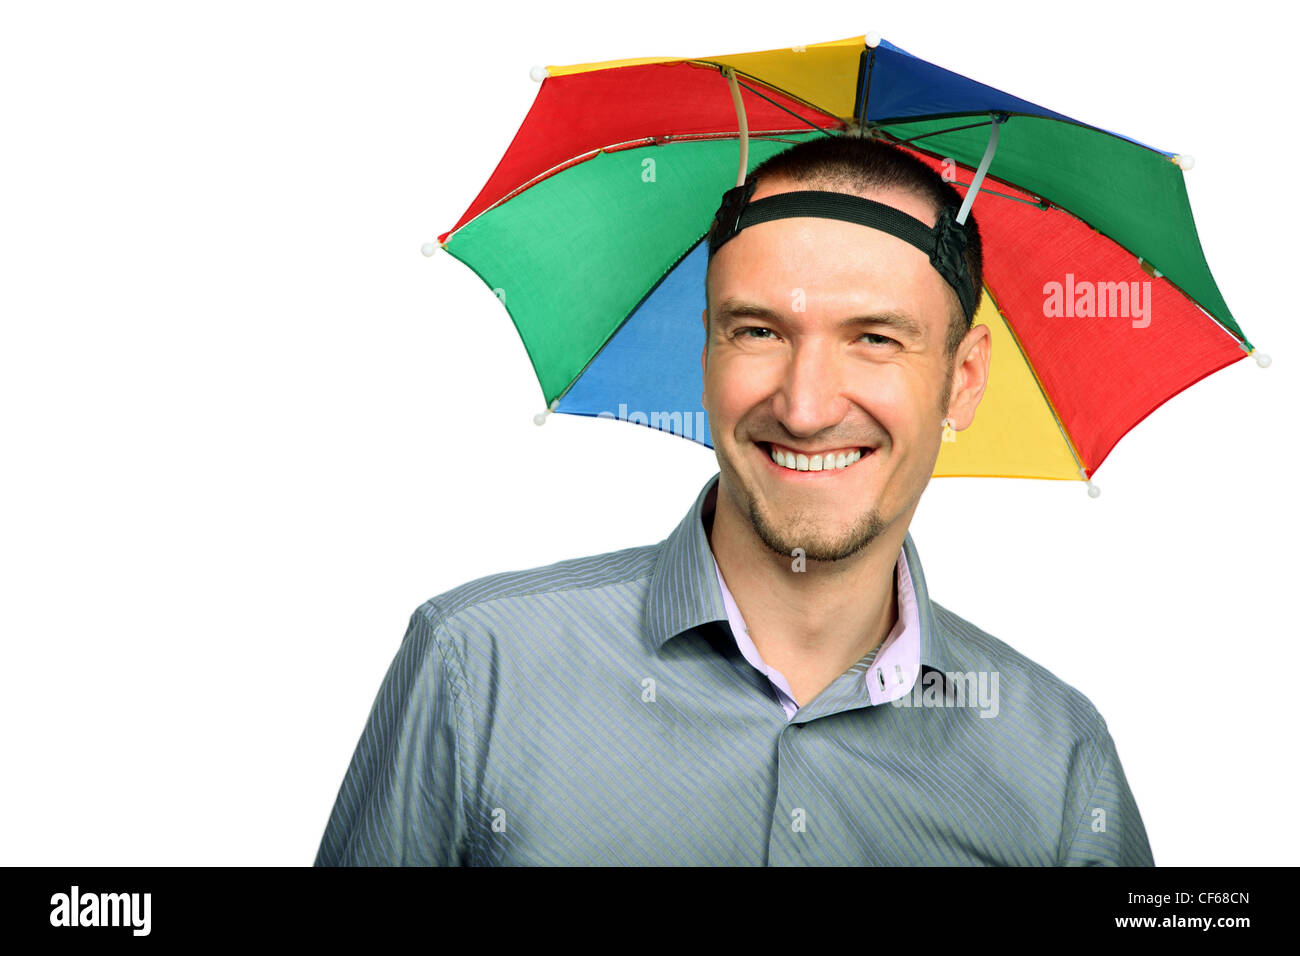 Porträt von glücklich Kaufmann mit Regenbogen Hut Sonnenschirm am Kopf  Stockfotografie - Alamy